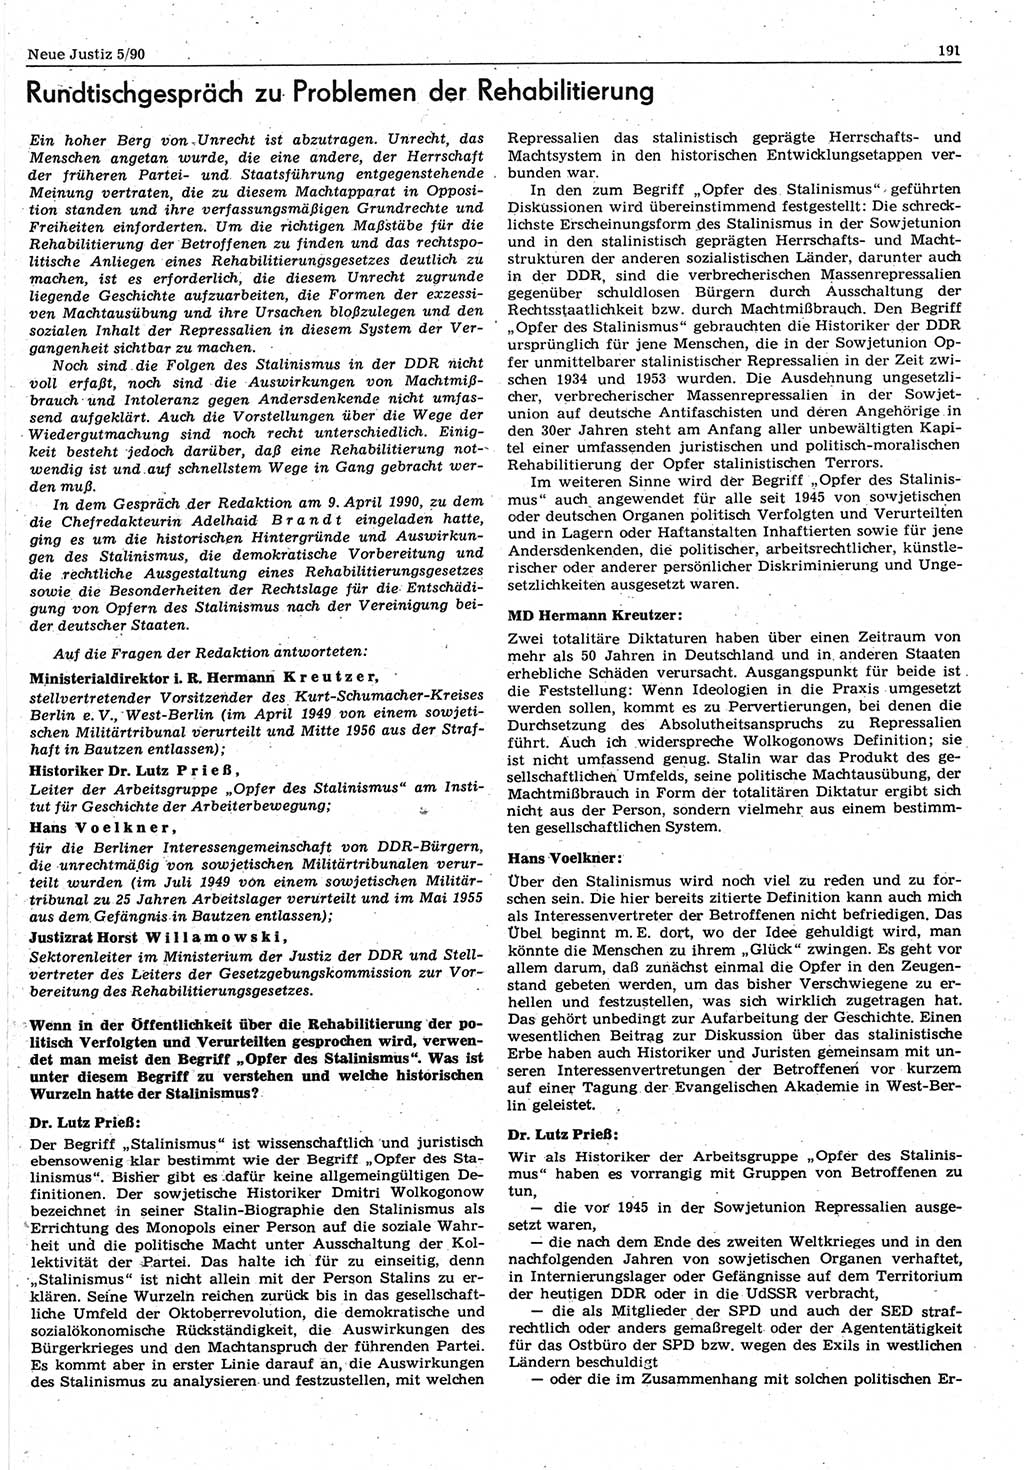 Neue Justiz (NJ), Zeitschrift für Rechtsetzung und Rechtsanwendung [Deutsche Demokratische Republik (DDR)], 44. Jahrgang 1990, Seite 191 (NJ DDR 1990, S. 191)